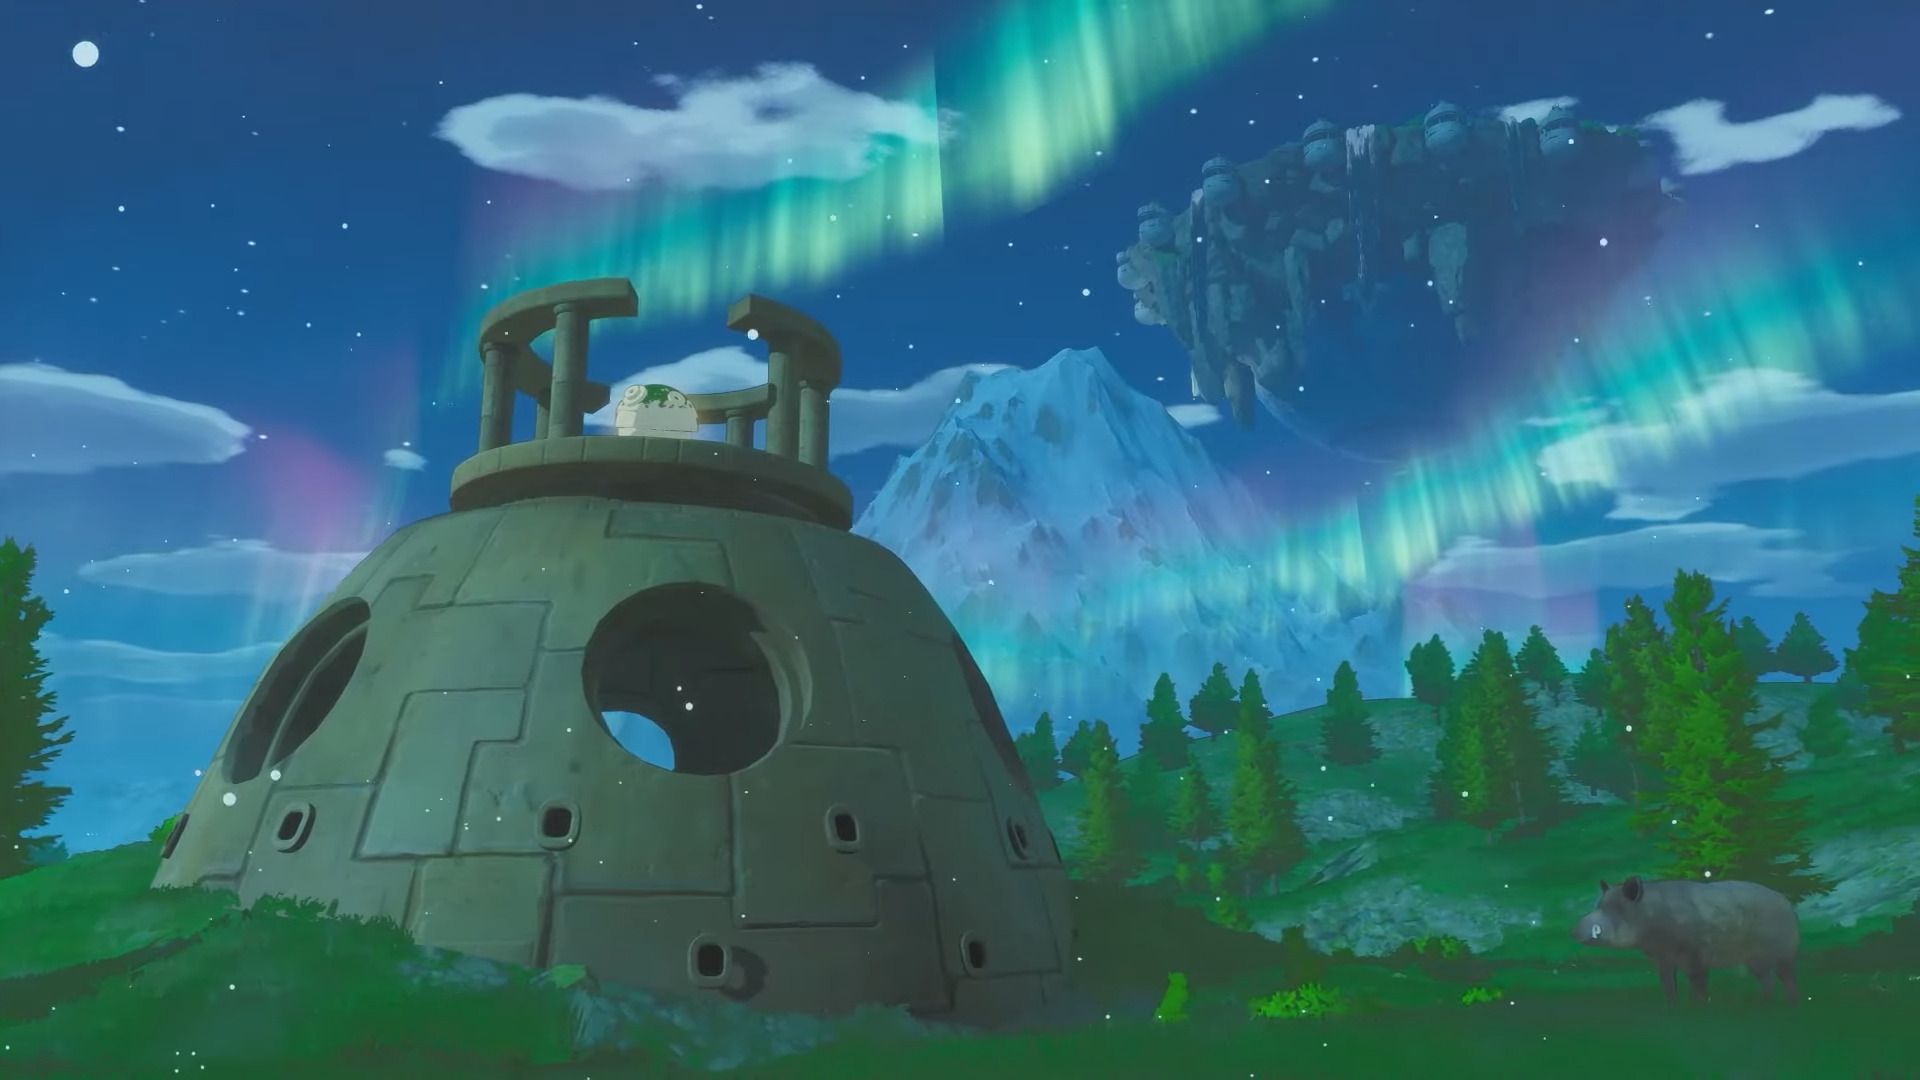 #Europa: Die Ghibli-inspirierte, meditative Reise auf den Mond hat einen konkreten Termin